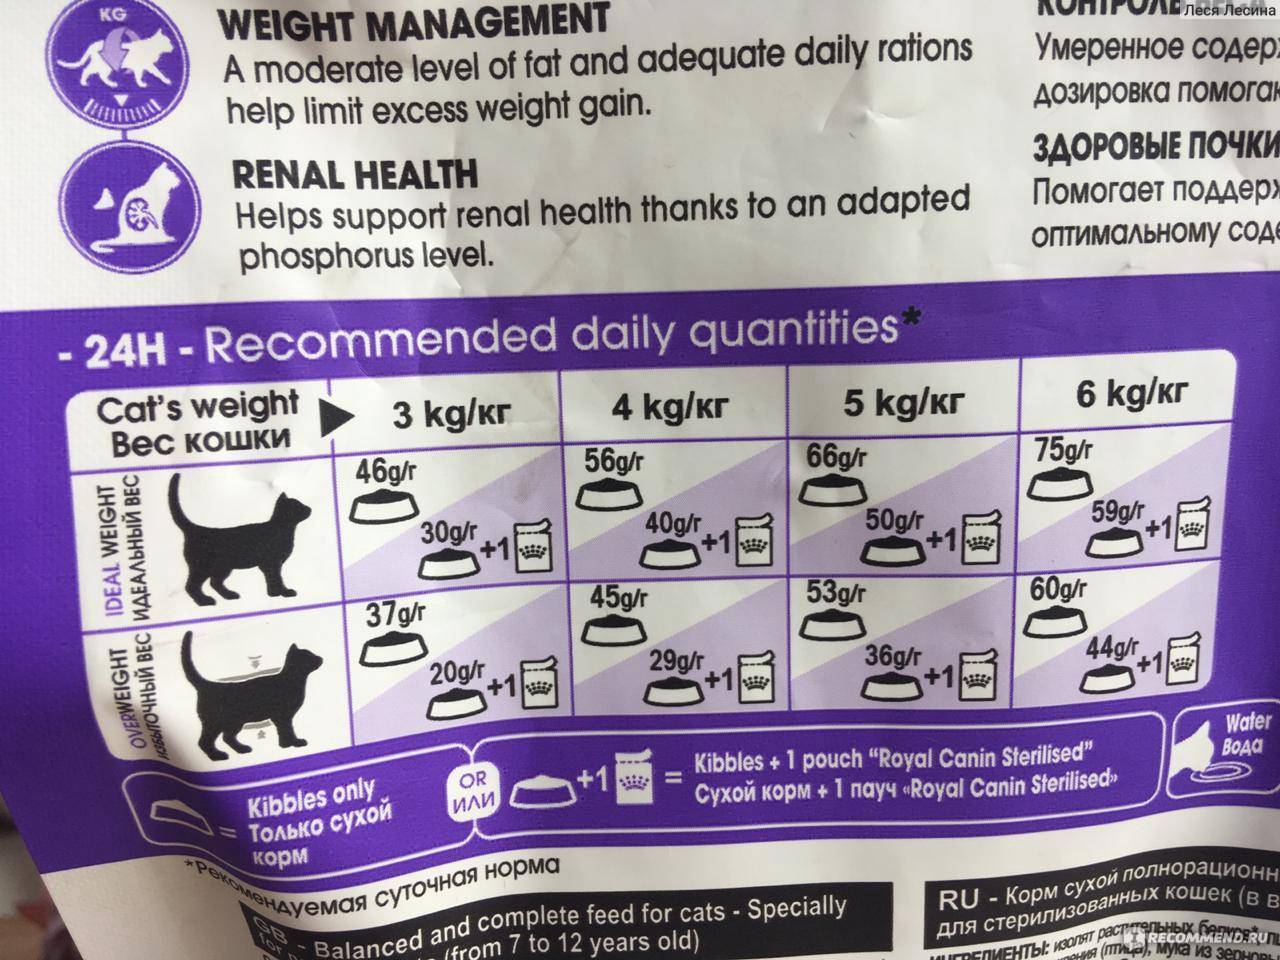 Рейтинг лучших мягких кормов и консервов для кастрированных и стерилизованных кошек супер премиум класса